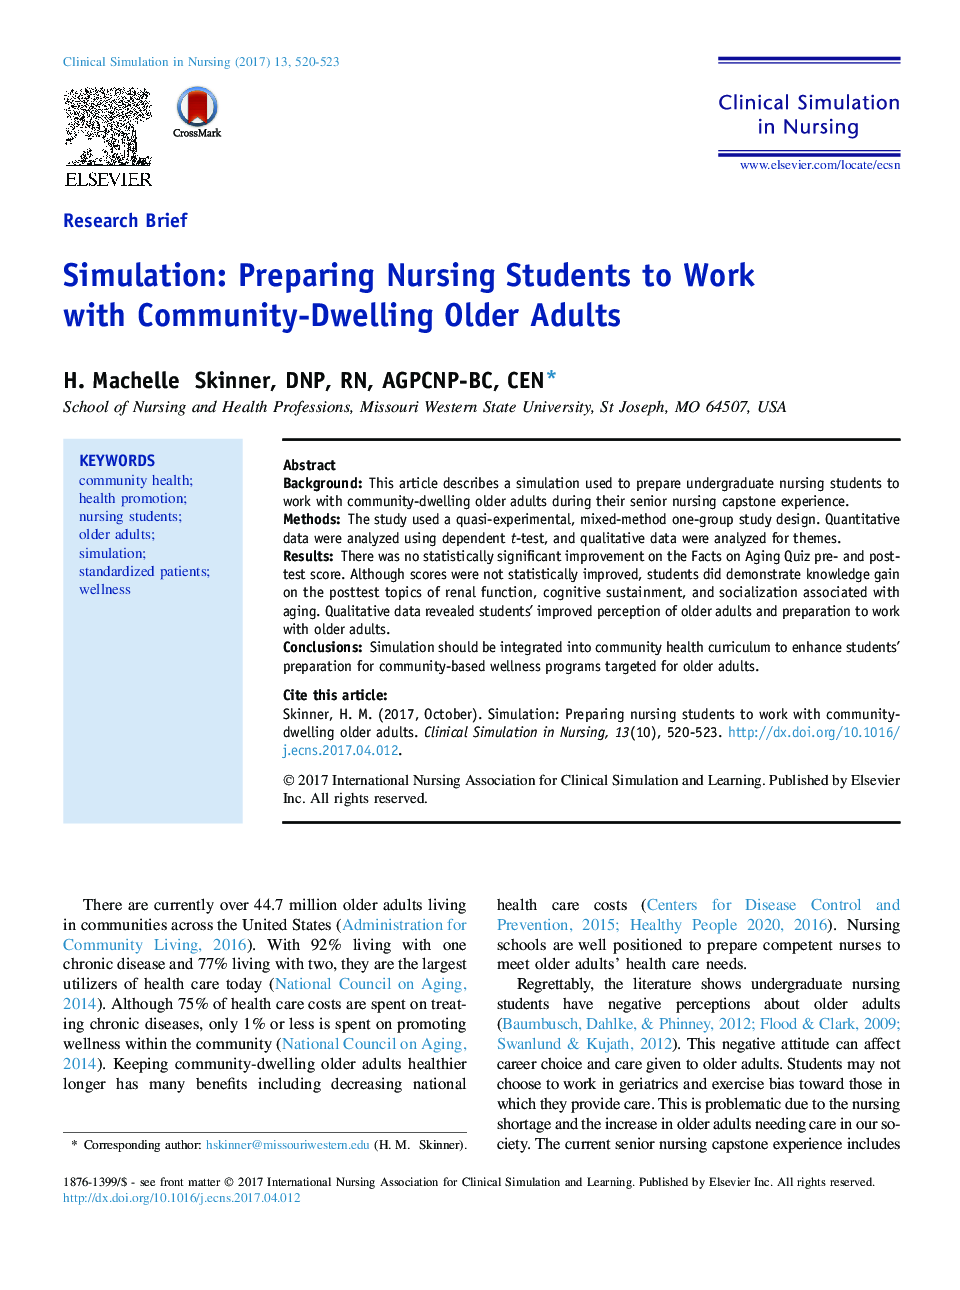 شبیه سازی: آماده سازی دانشجویان پرستاری برای کار با بزرگسالان مسن تر 